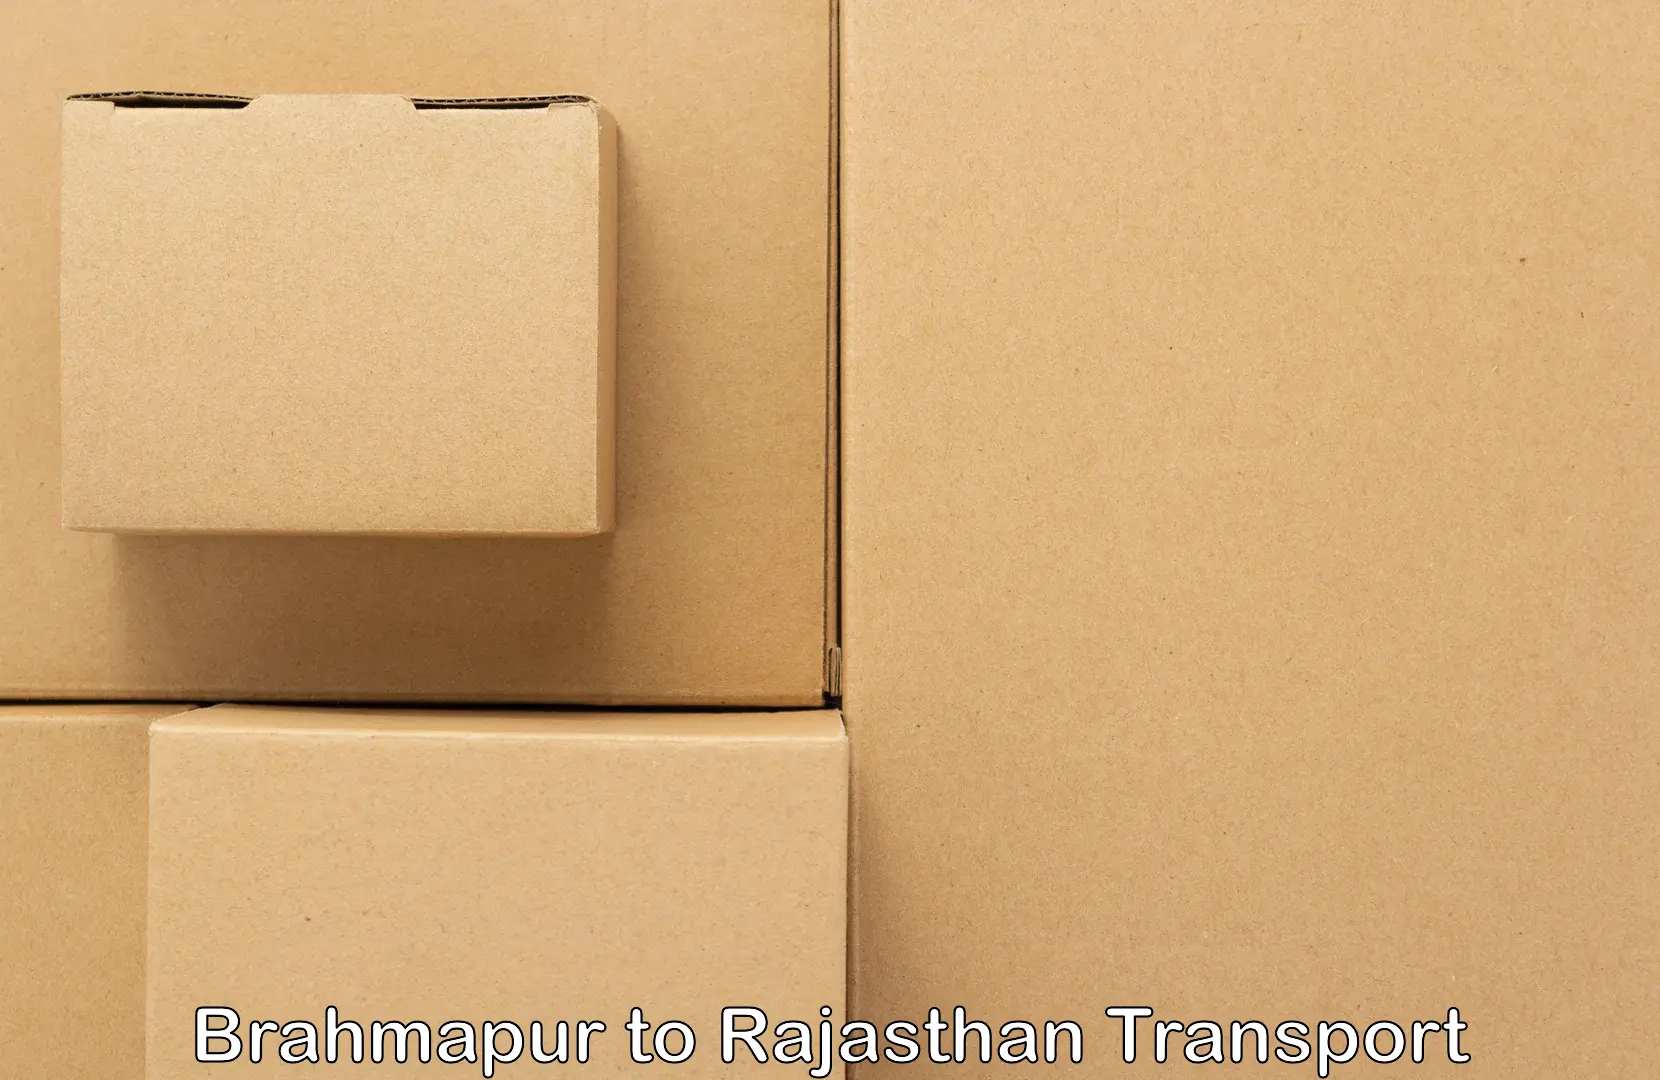 Transport in sharing in Brahmapur to Sri Vijaynagar